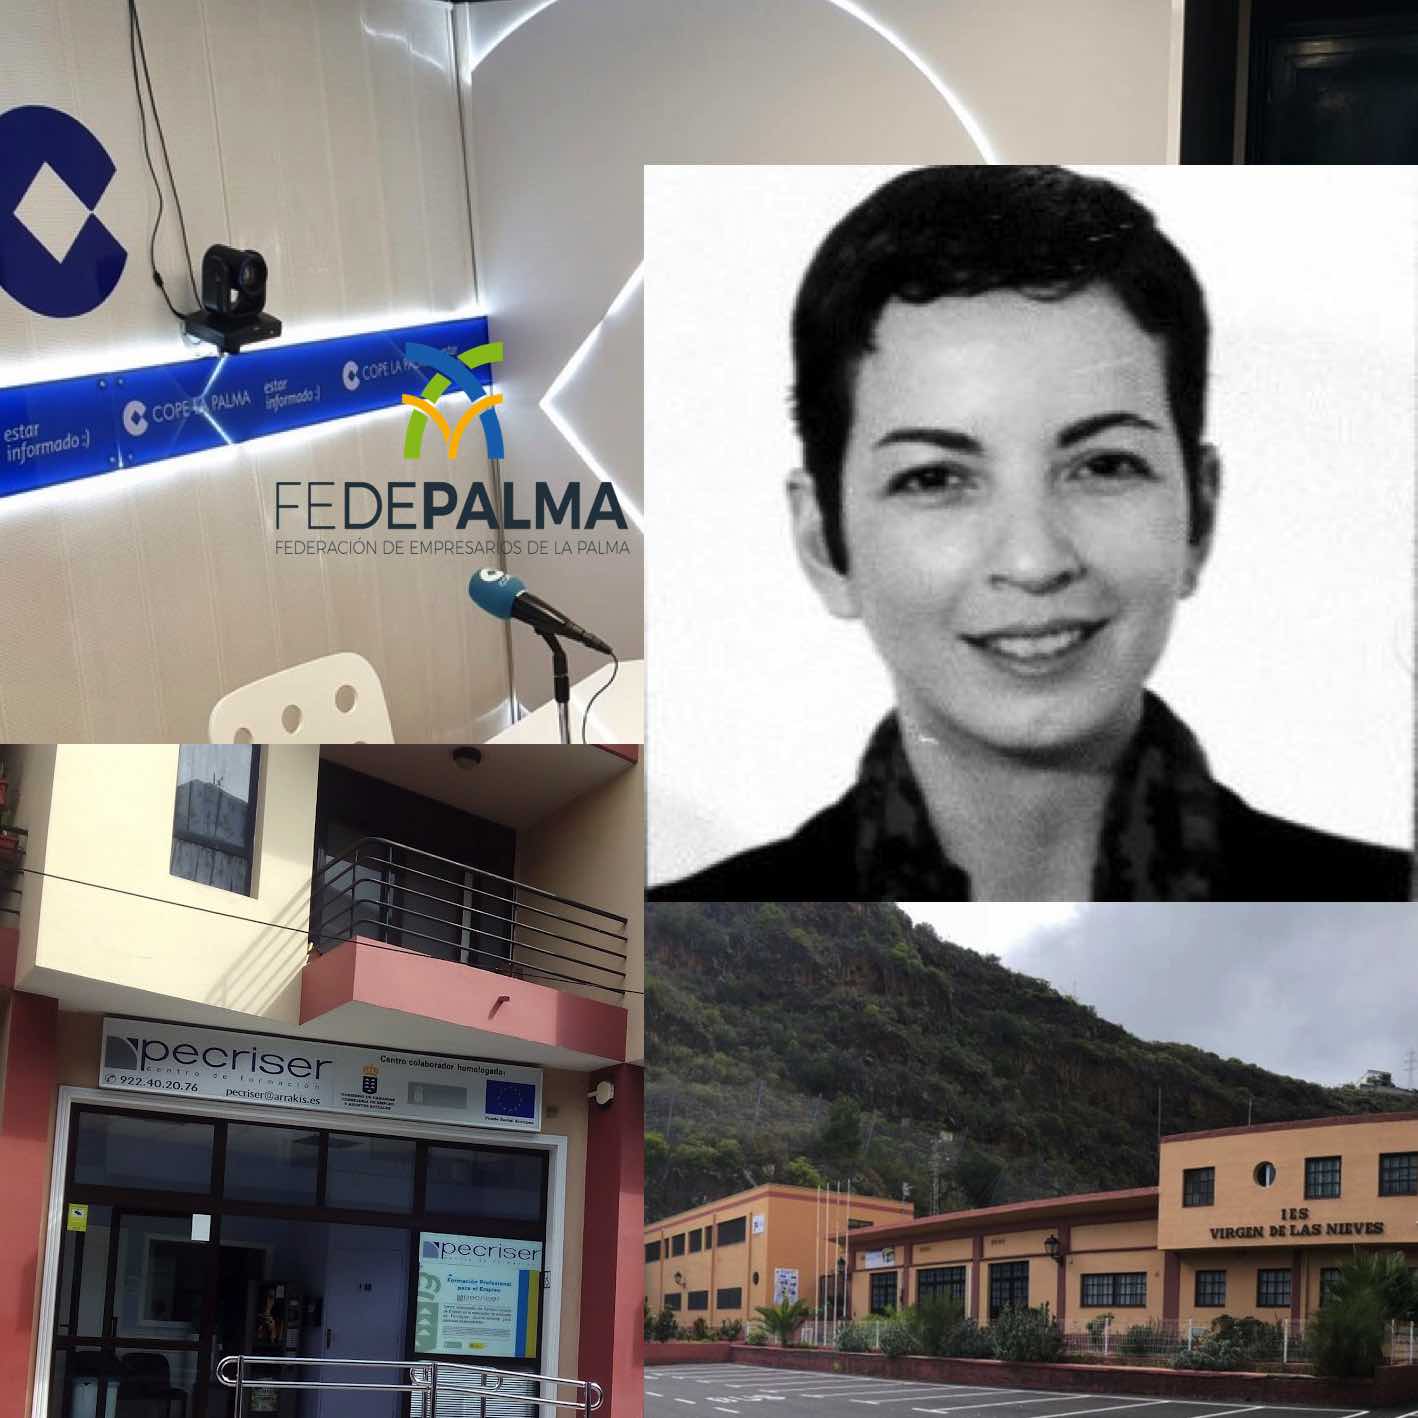 LUZ VERDE de Fedepalma habla con Lucía Rodríguez Cubas – Account Manager MOTUM EXPERIENCIE